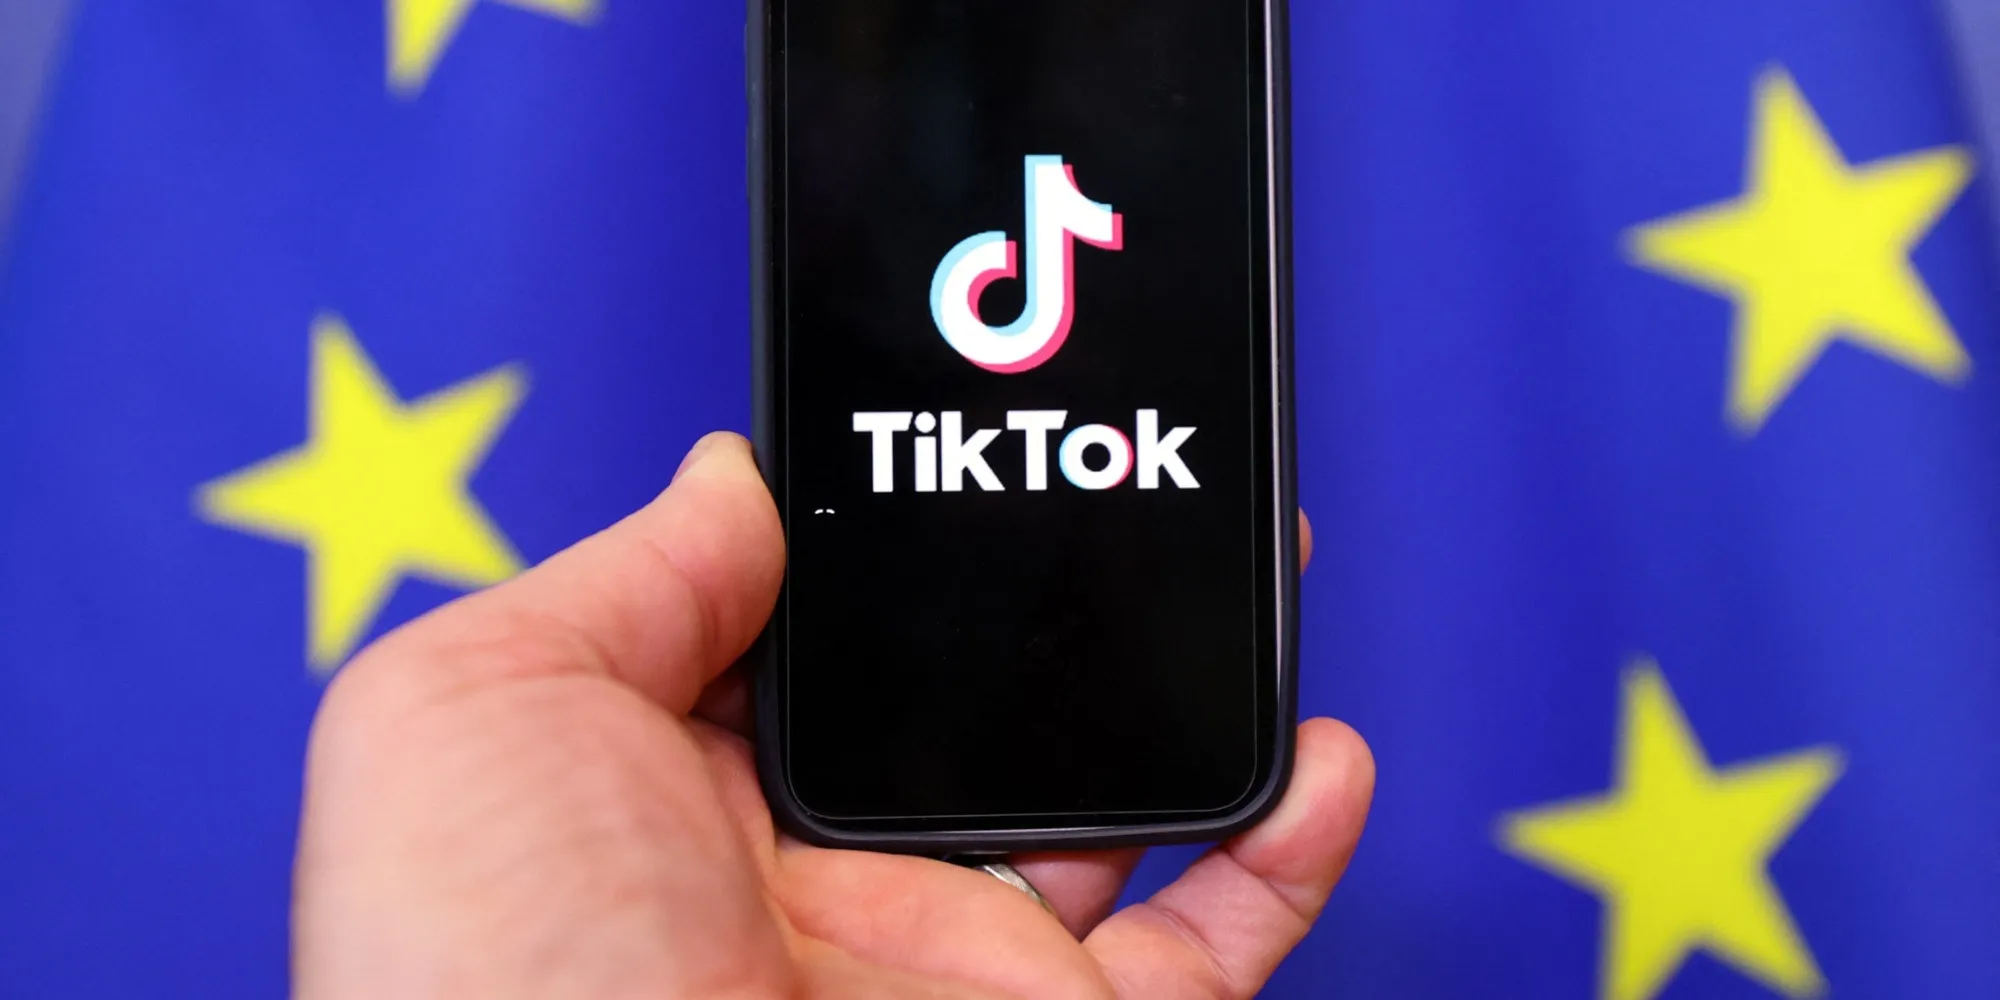 União europeia abre investigação formal sobre TikTok sobre possíveis violações de conteúdo online